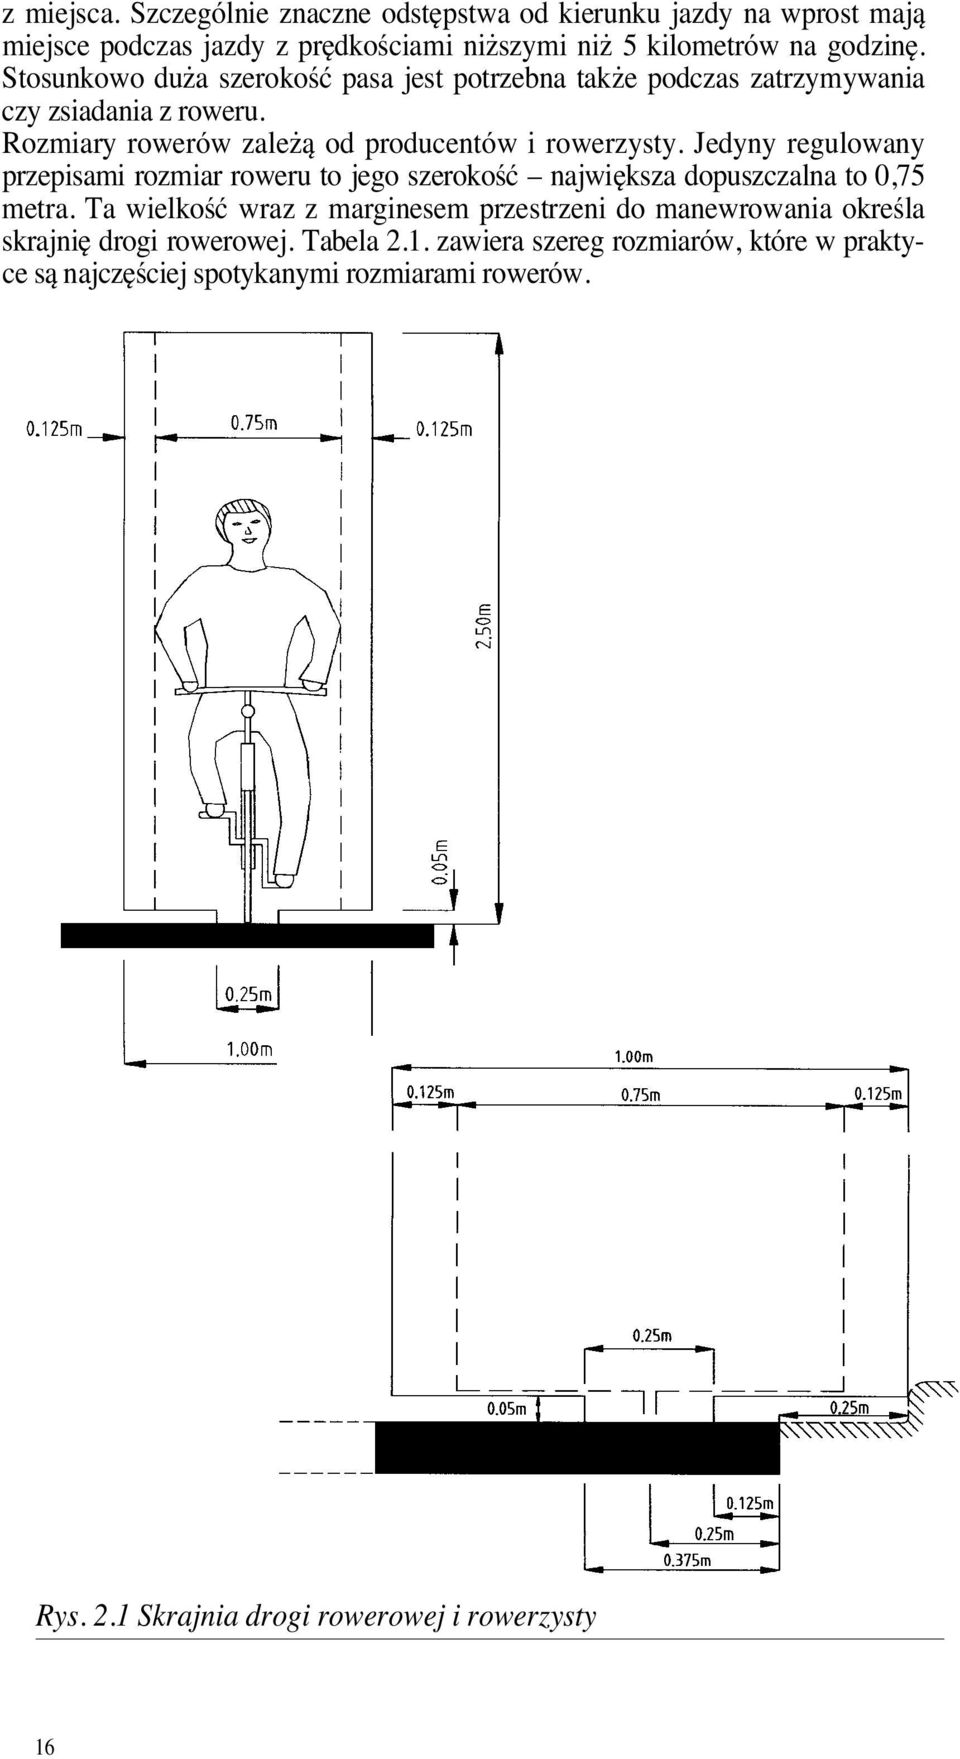 Jedyny regulowany przepisami rozmiar roweru to jego szerokoêç najwi ksza dopuszczalna to 0,75 metra.